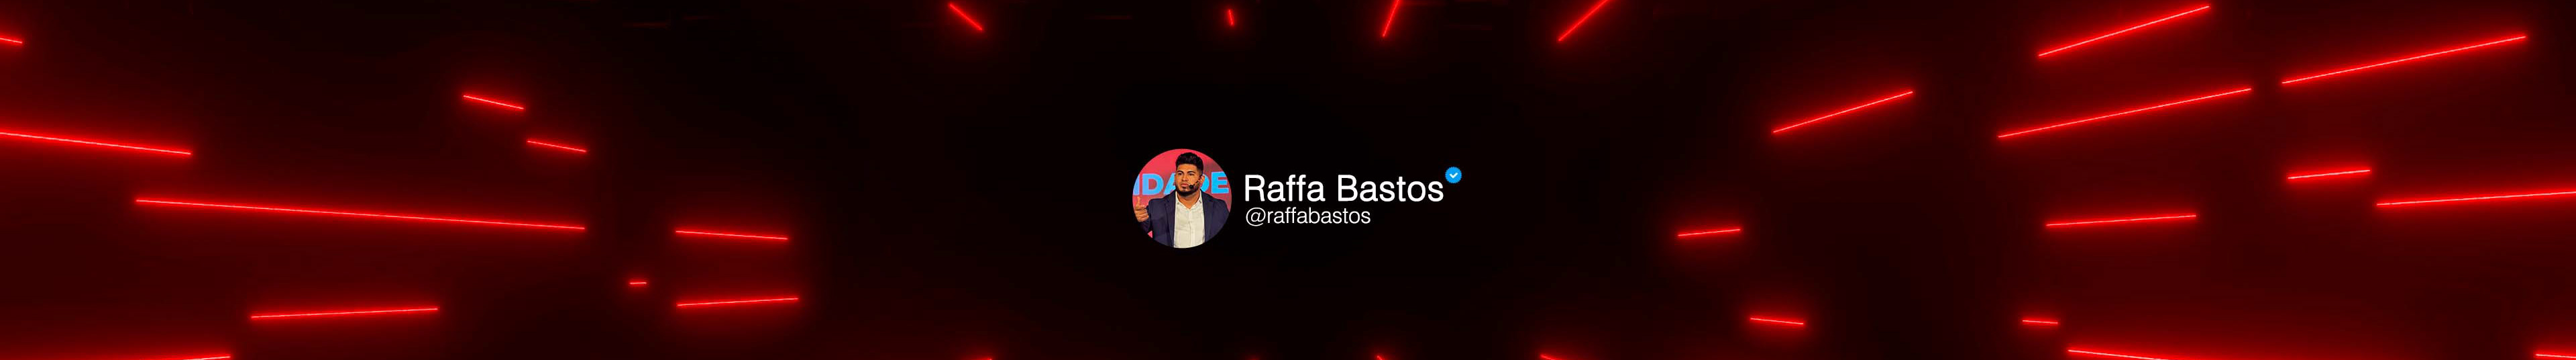 Raffa Bastos profil başlığı